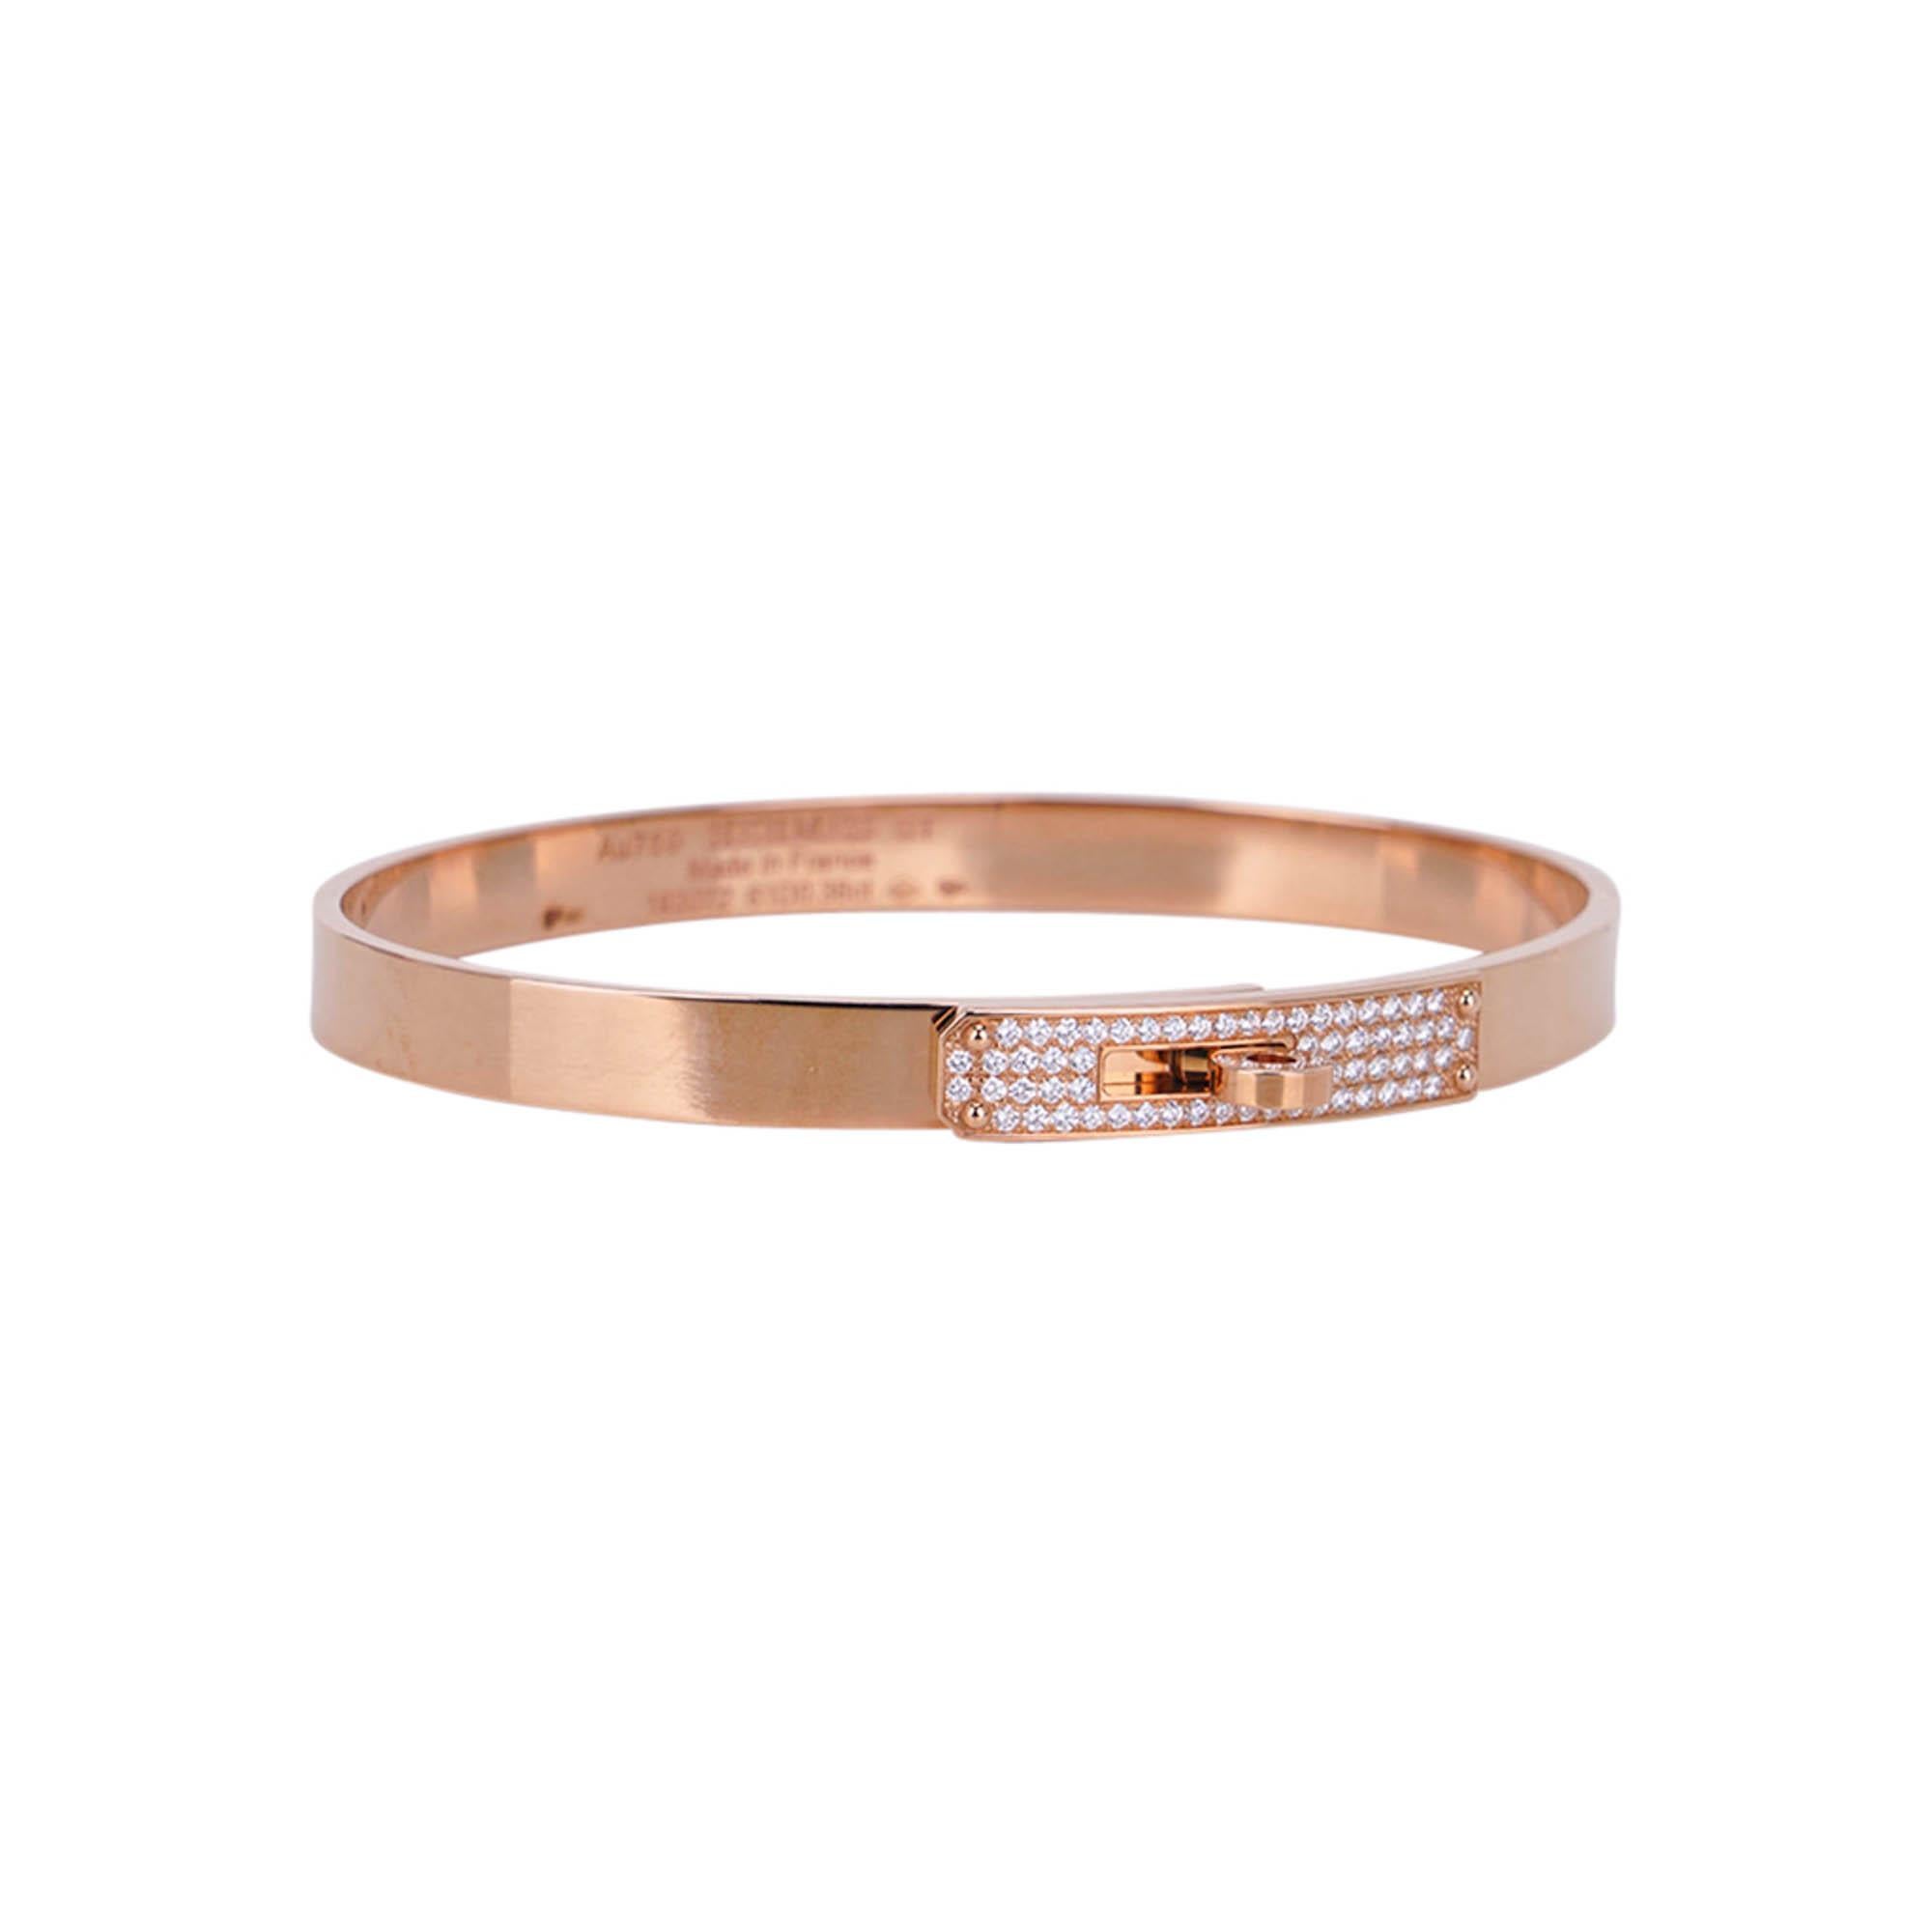 Mightychic propose un bracelet Hermes Kelly chic et instantanément reconnaissable, petit modèle.
Bracelet iconique avec fermoir tournant en or rose 18 carats, serti de 61 diamants.
Le poids total des carats est de 0,36.
Parfait pour une tenue de